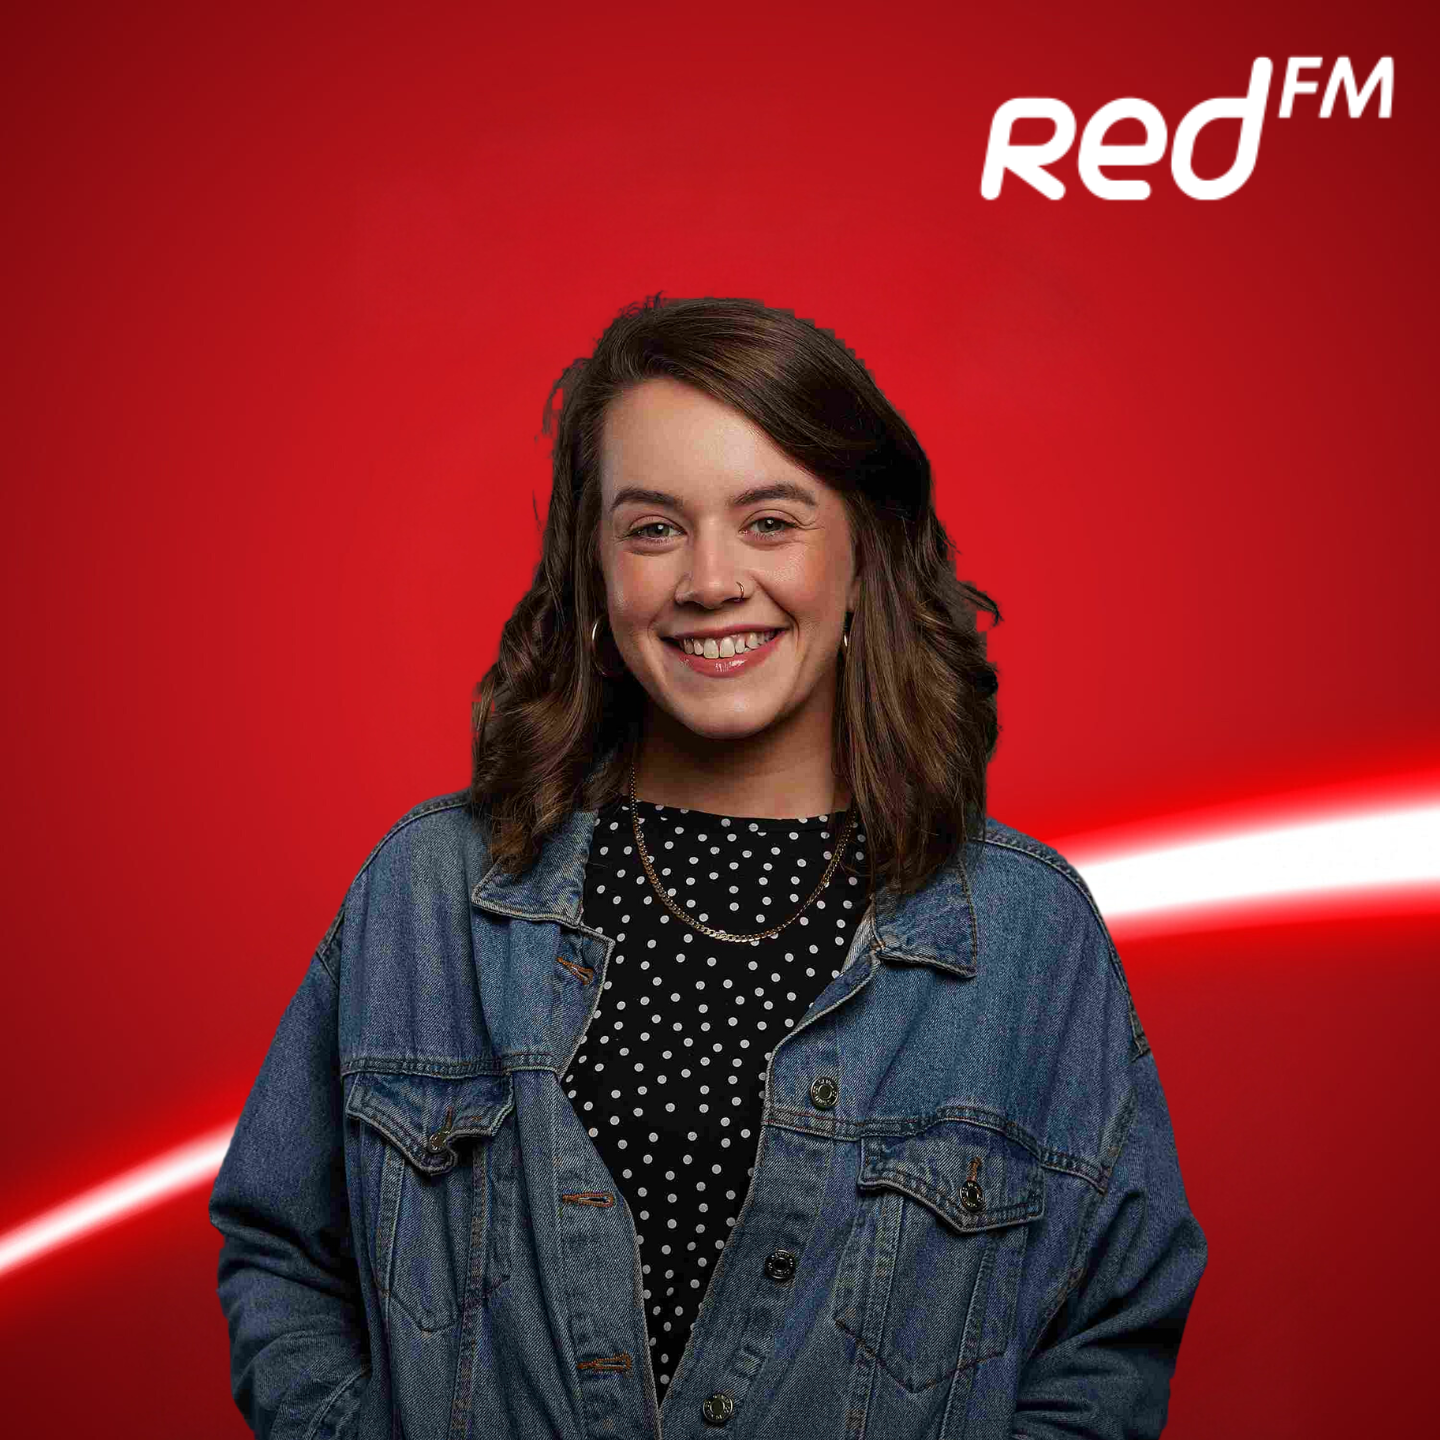 Katie Jane on Red FM